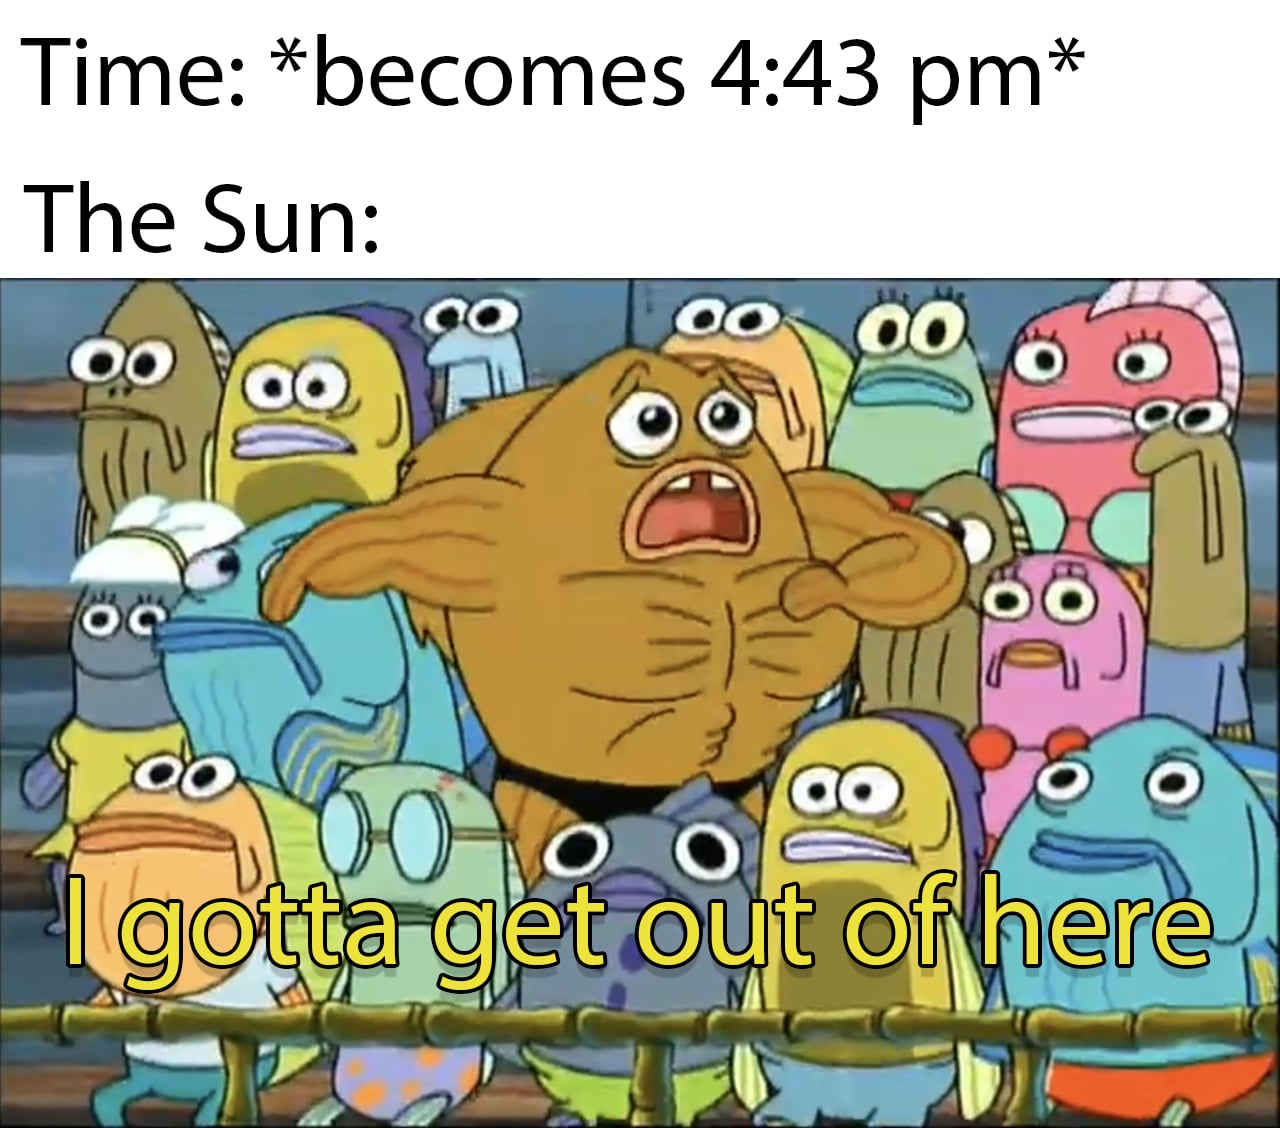 Spongebob Meme, Fish, Leaving, Running, Weather spongebob-memes spongebob text: Time: *becomes 4:43 pm* The Sun: oo- 00 00 oo govgéOt< oo 0 